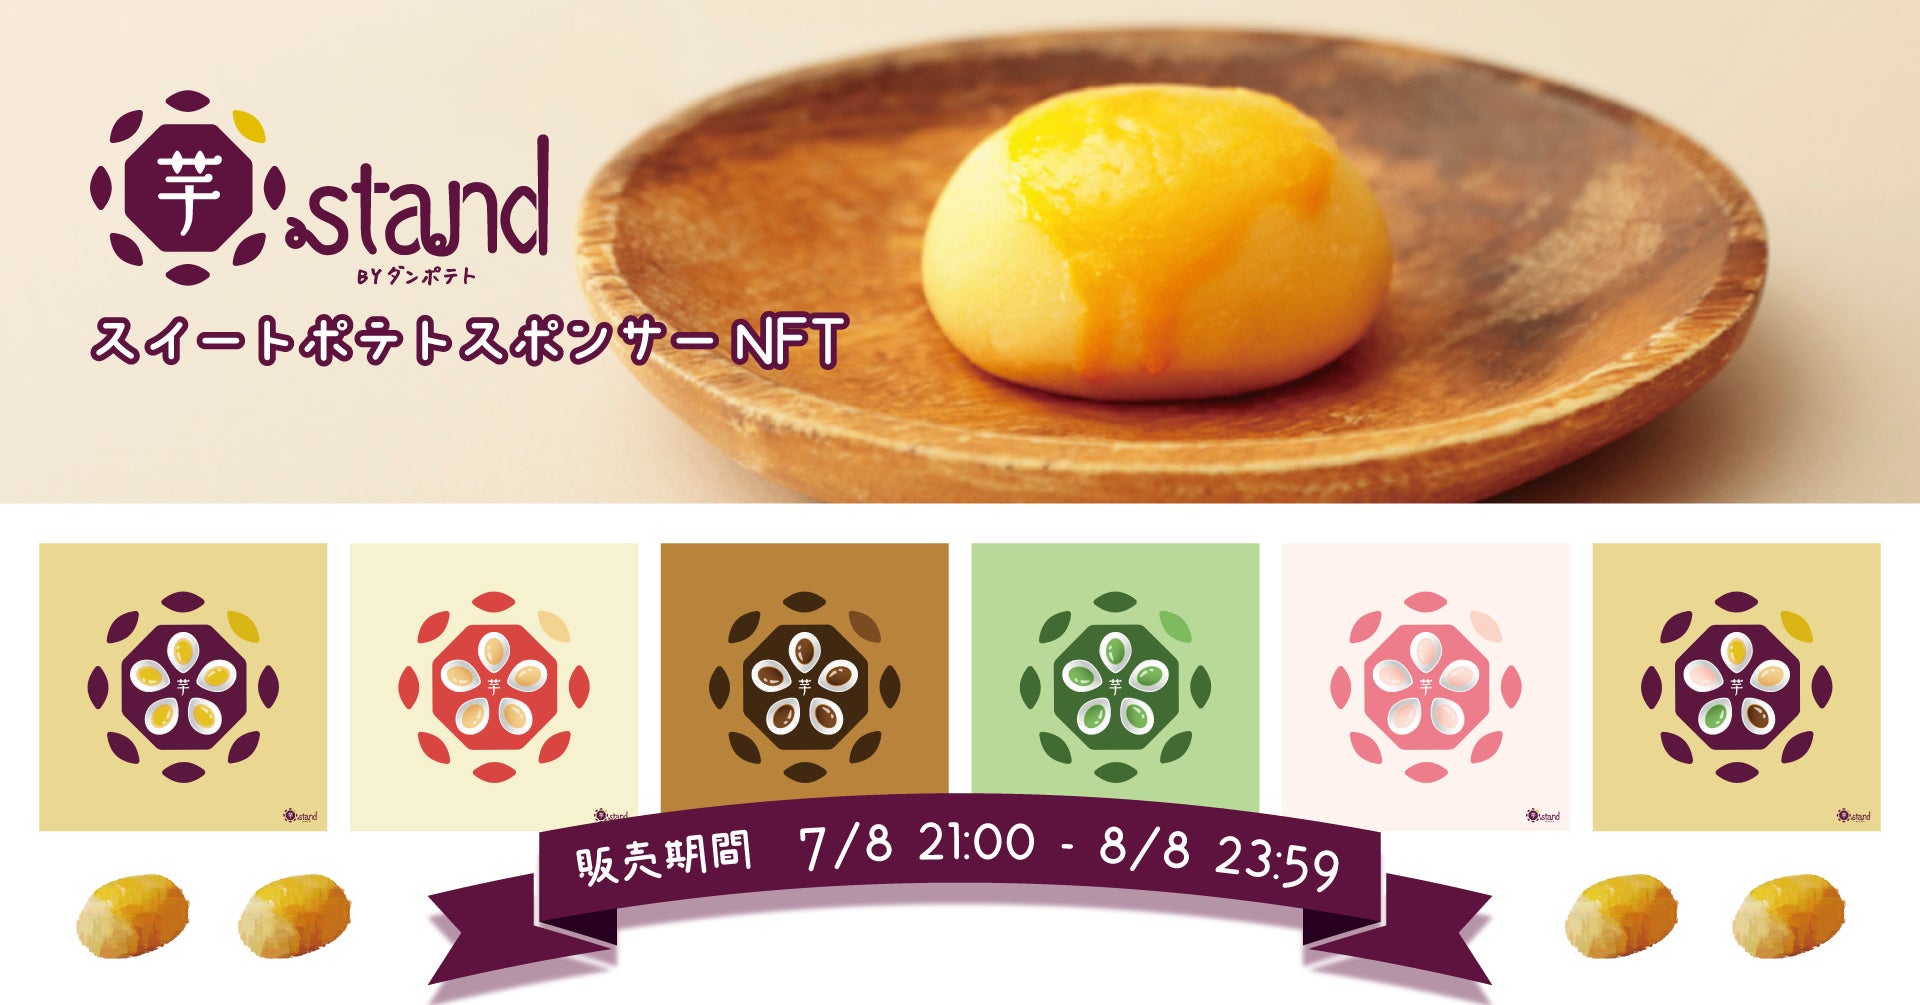 【夏限定】フレッシュマンゴーを贅沢に使ったボンボン 7/15提供開始!!